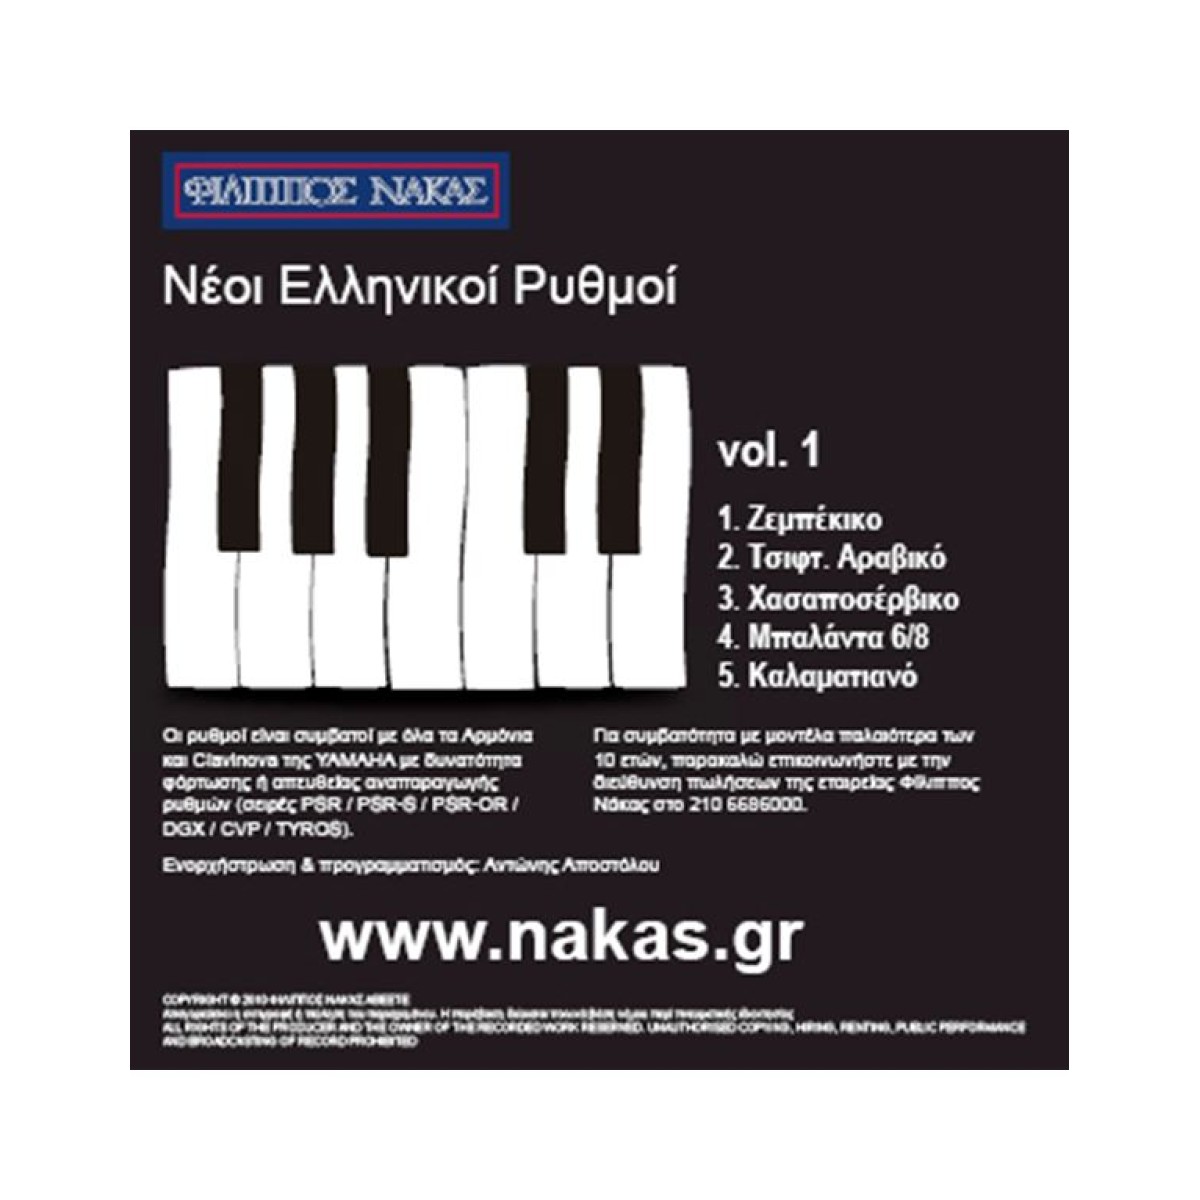 Νέοι Ελληνικοί Ρυθμοί CD Vol. 1